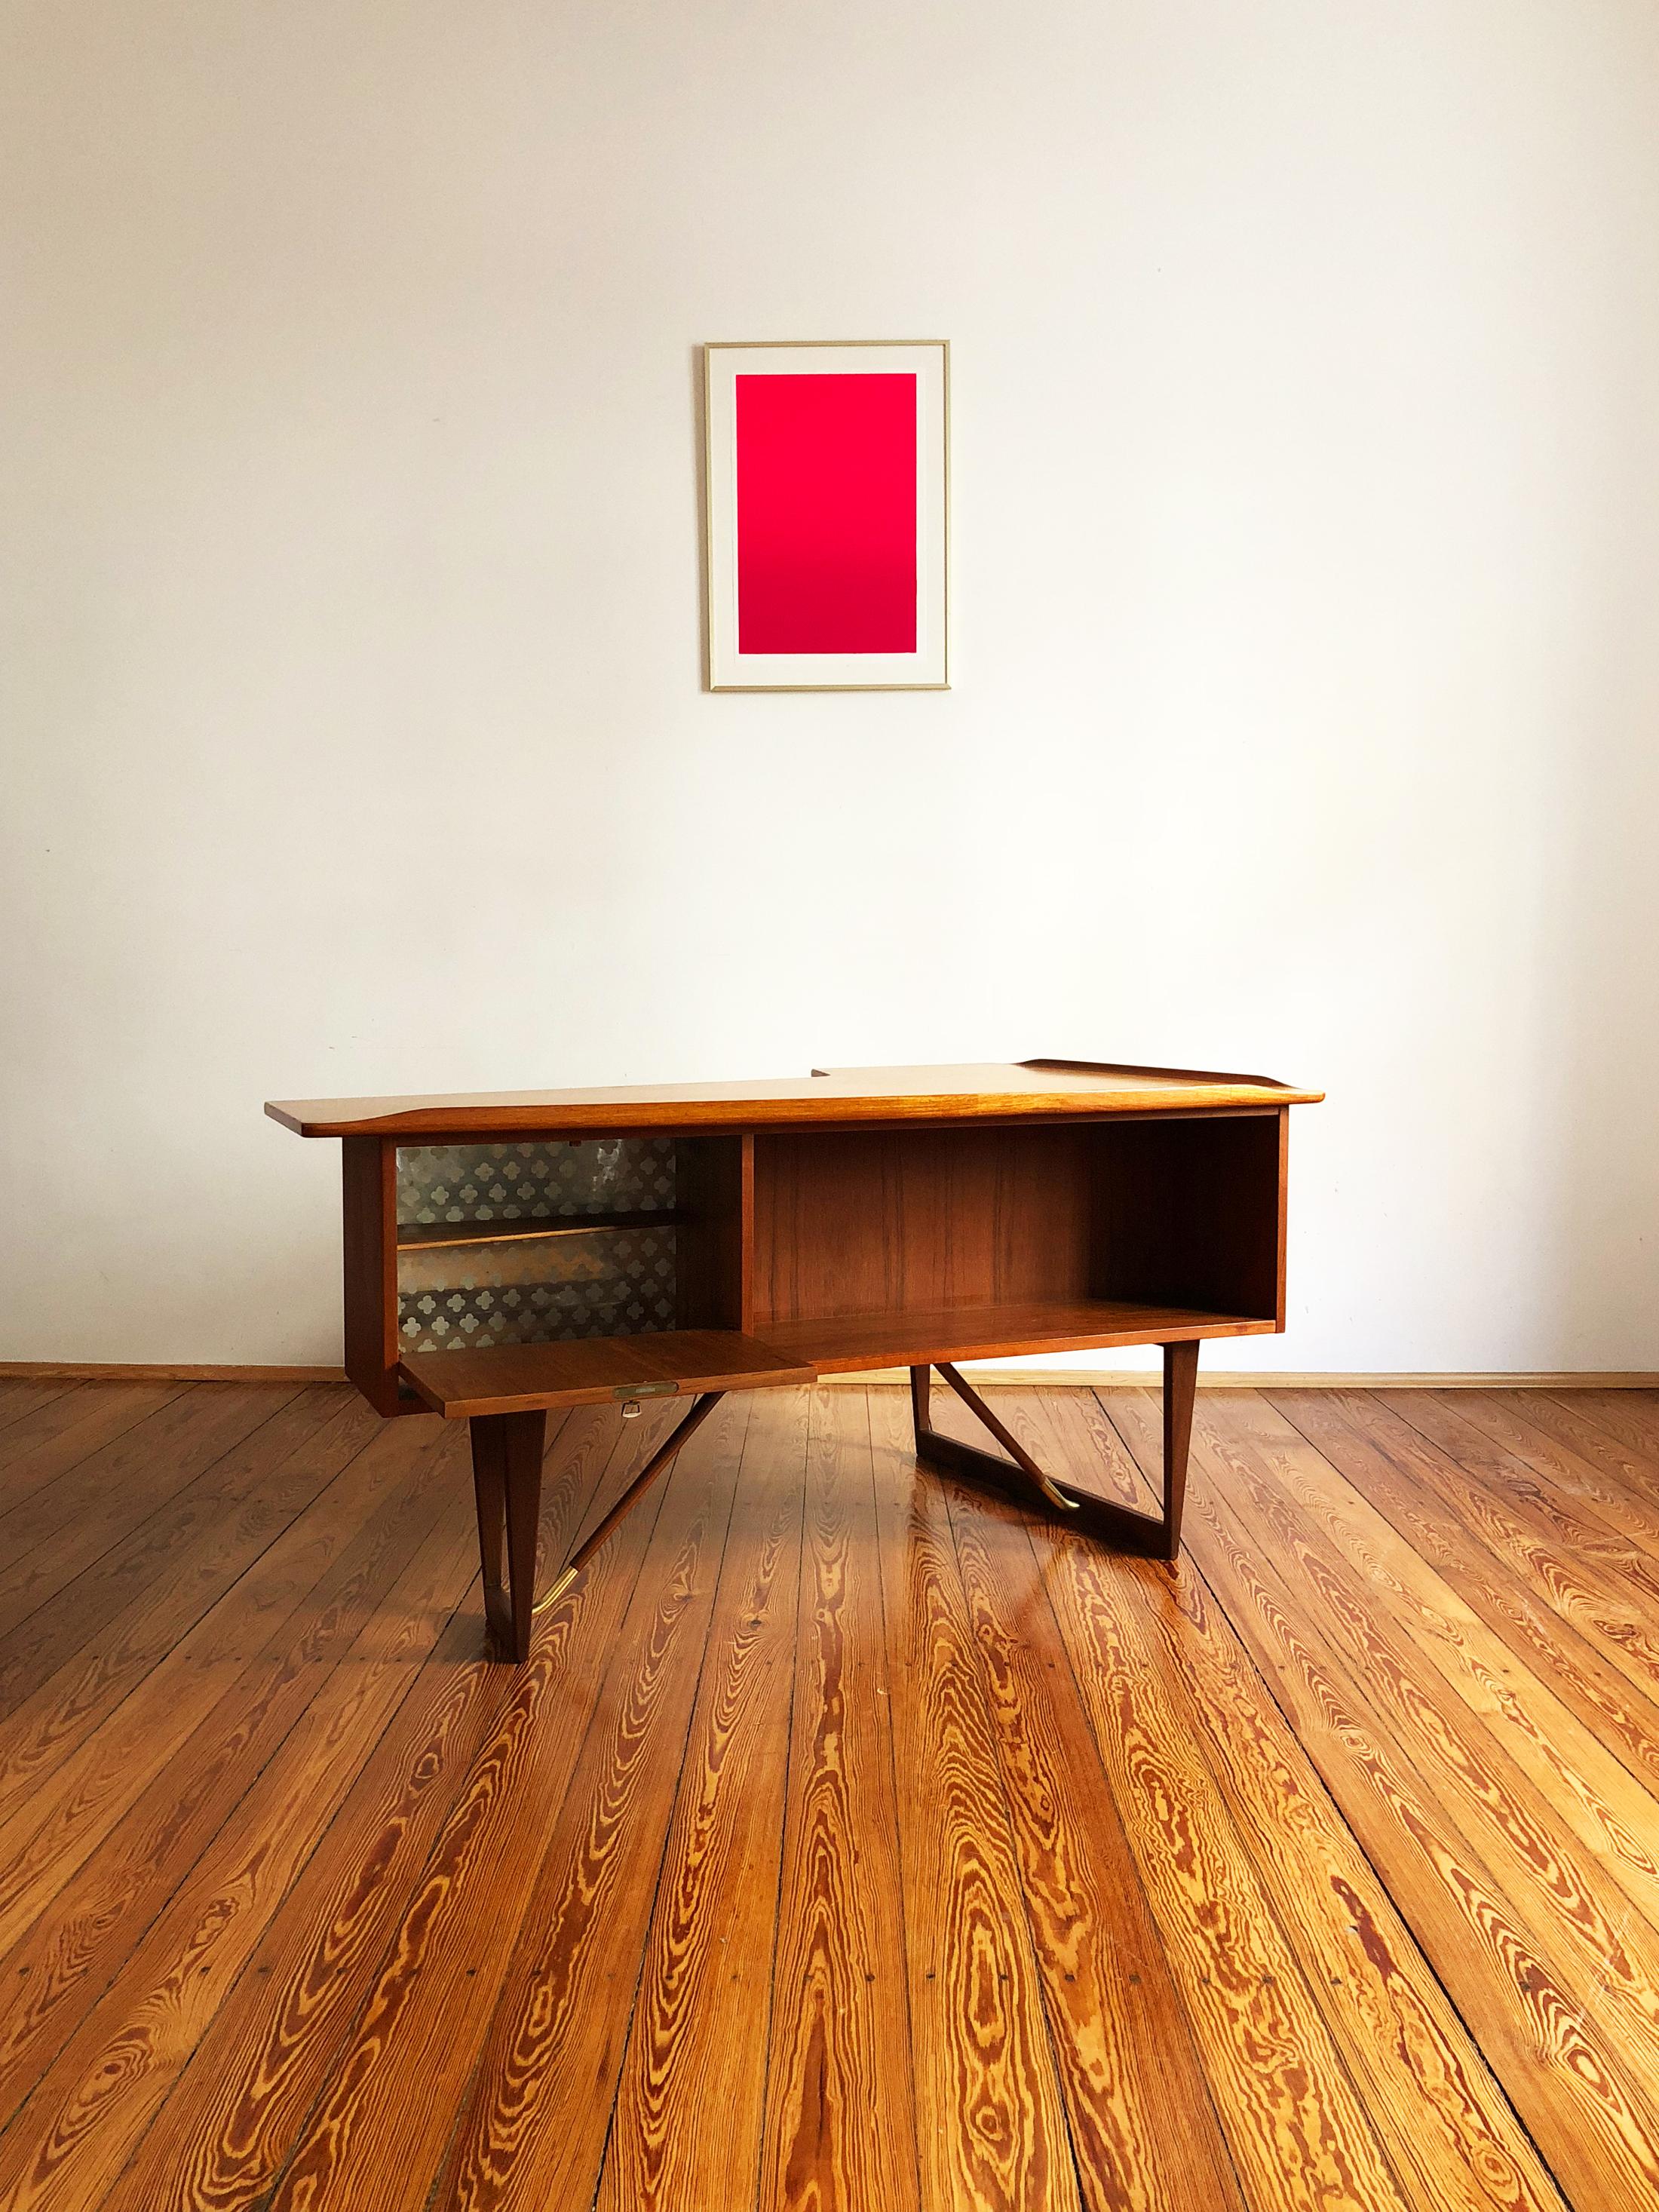 This free standing midcentury Danish writing desk was designed by Peter Løvig Nielsen for Løvig Dansk. The 